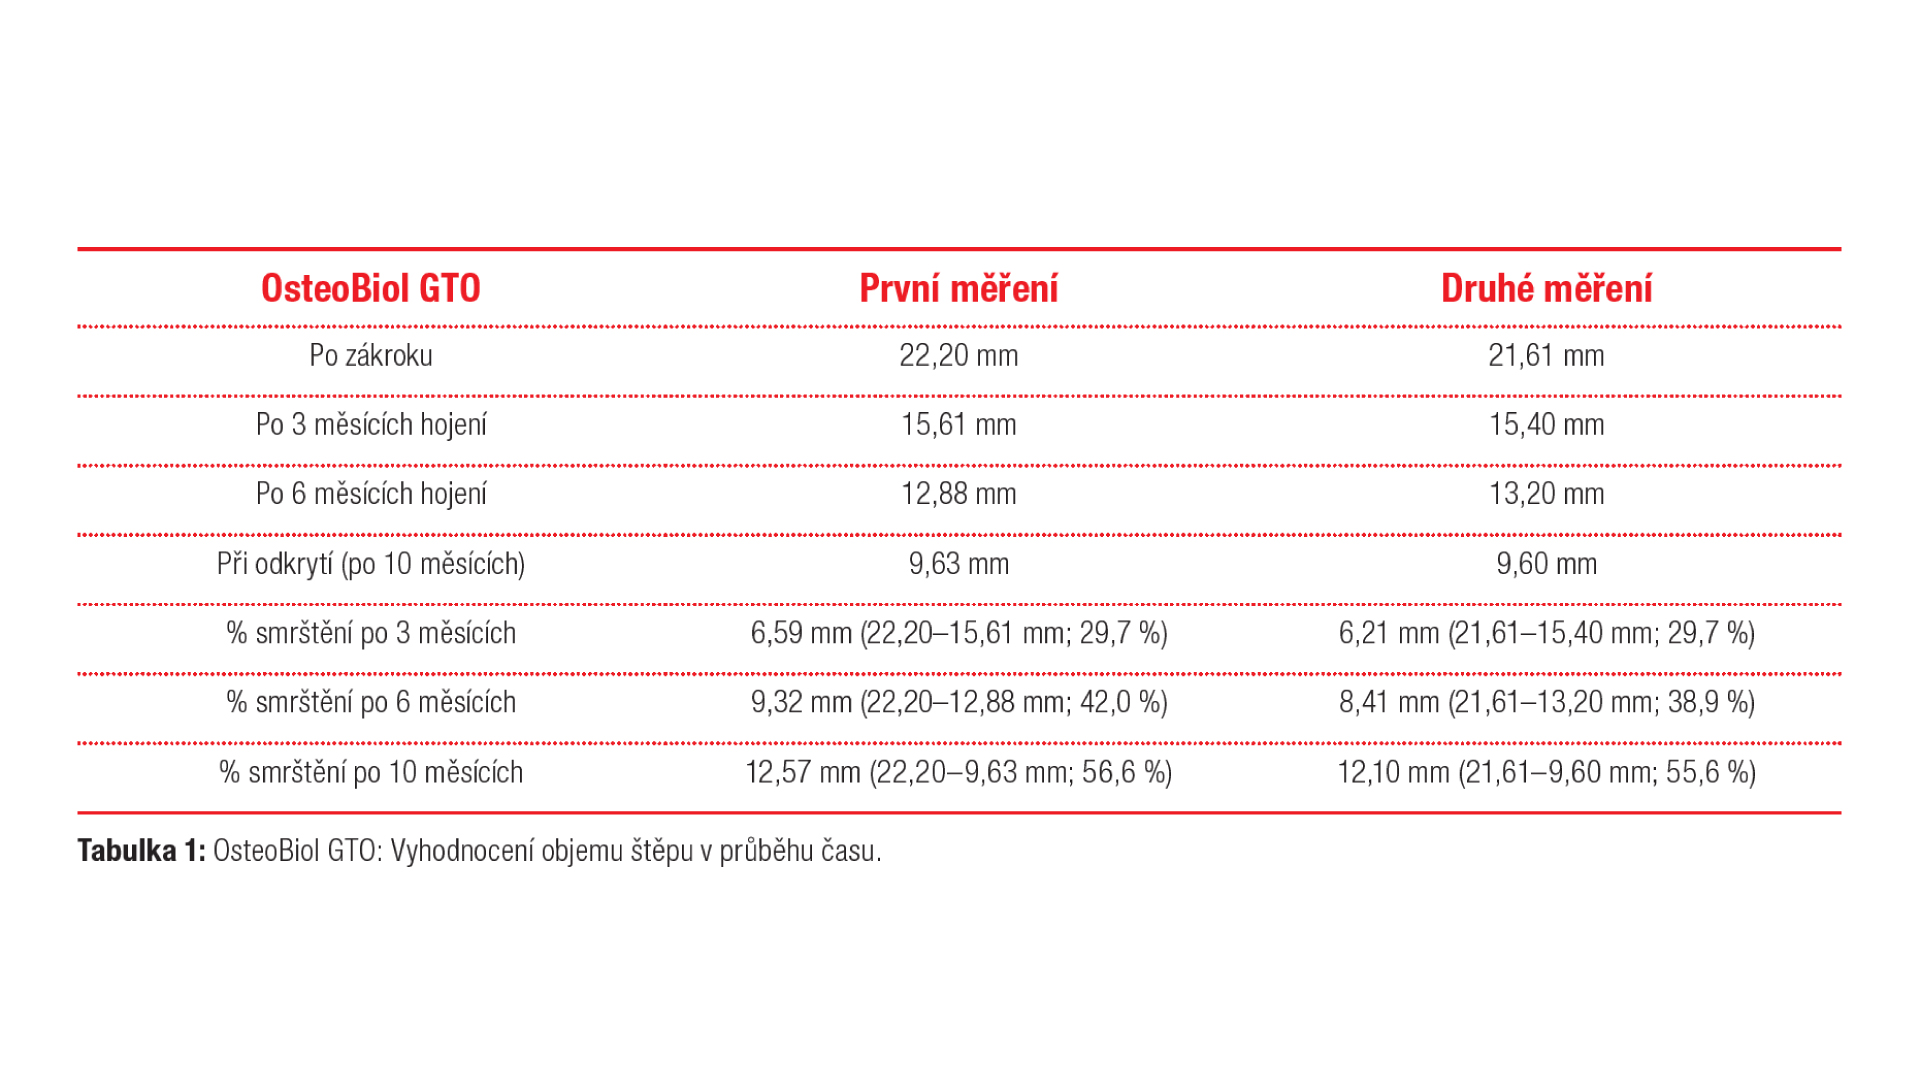 Tabulka 1: OsteoBiol GTO: Vyhodnocení objemu štěpu v průběhu času.